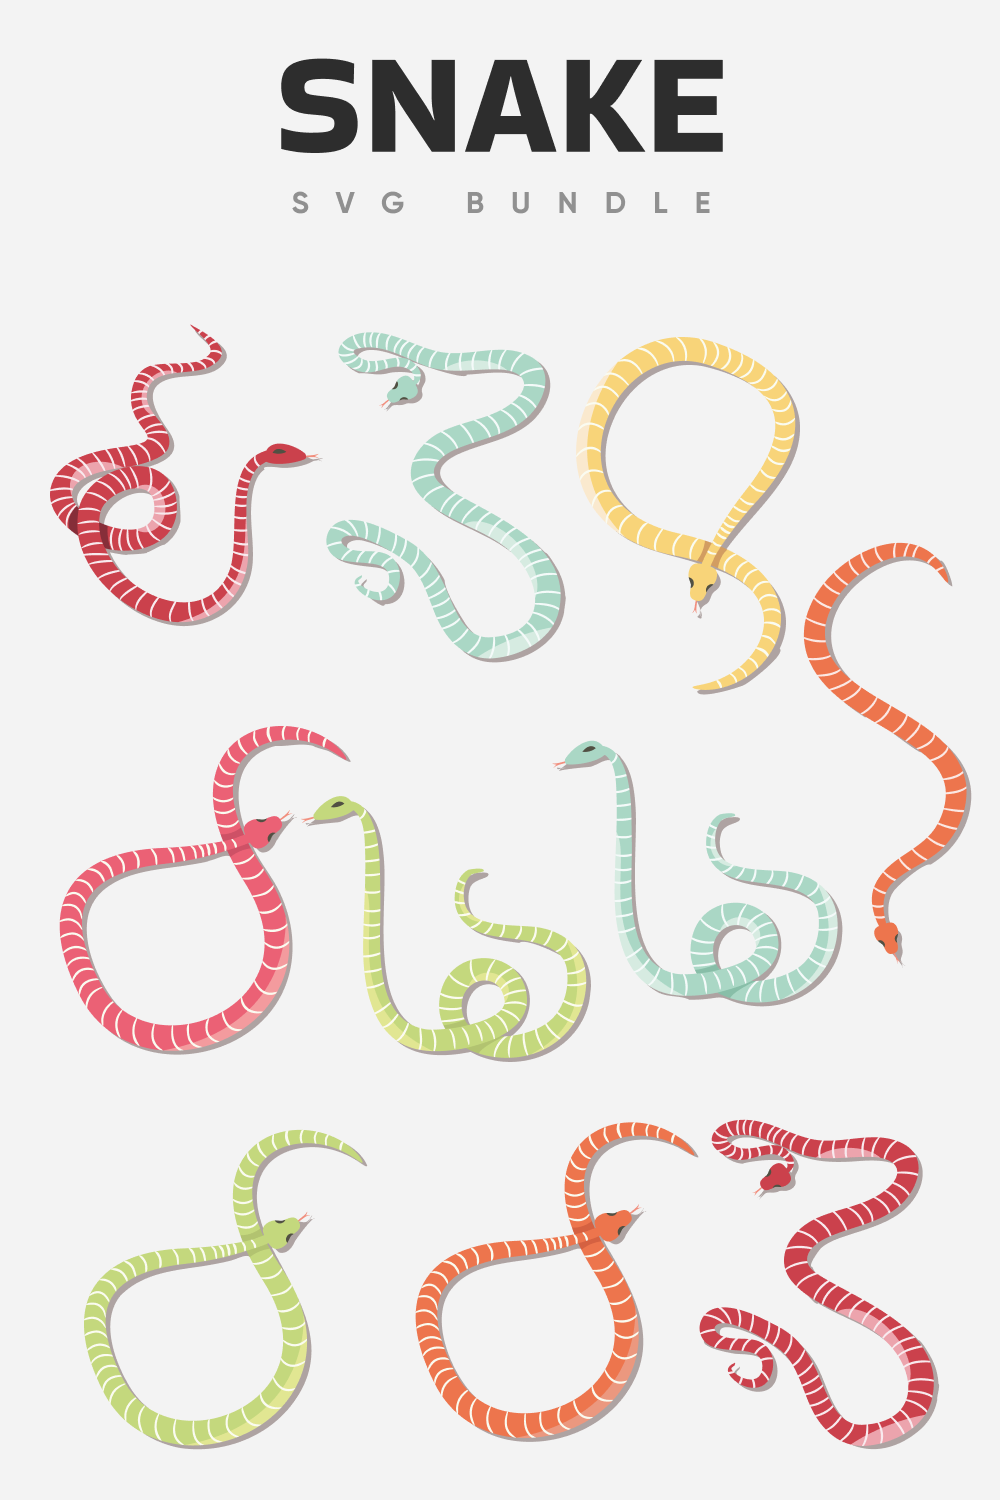 Snake SVG bundle.